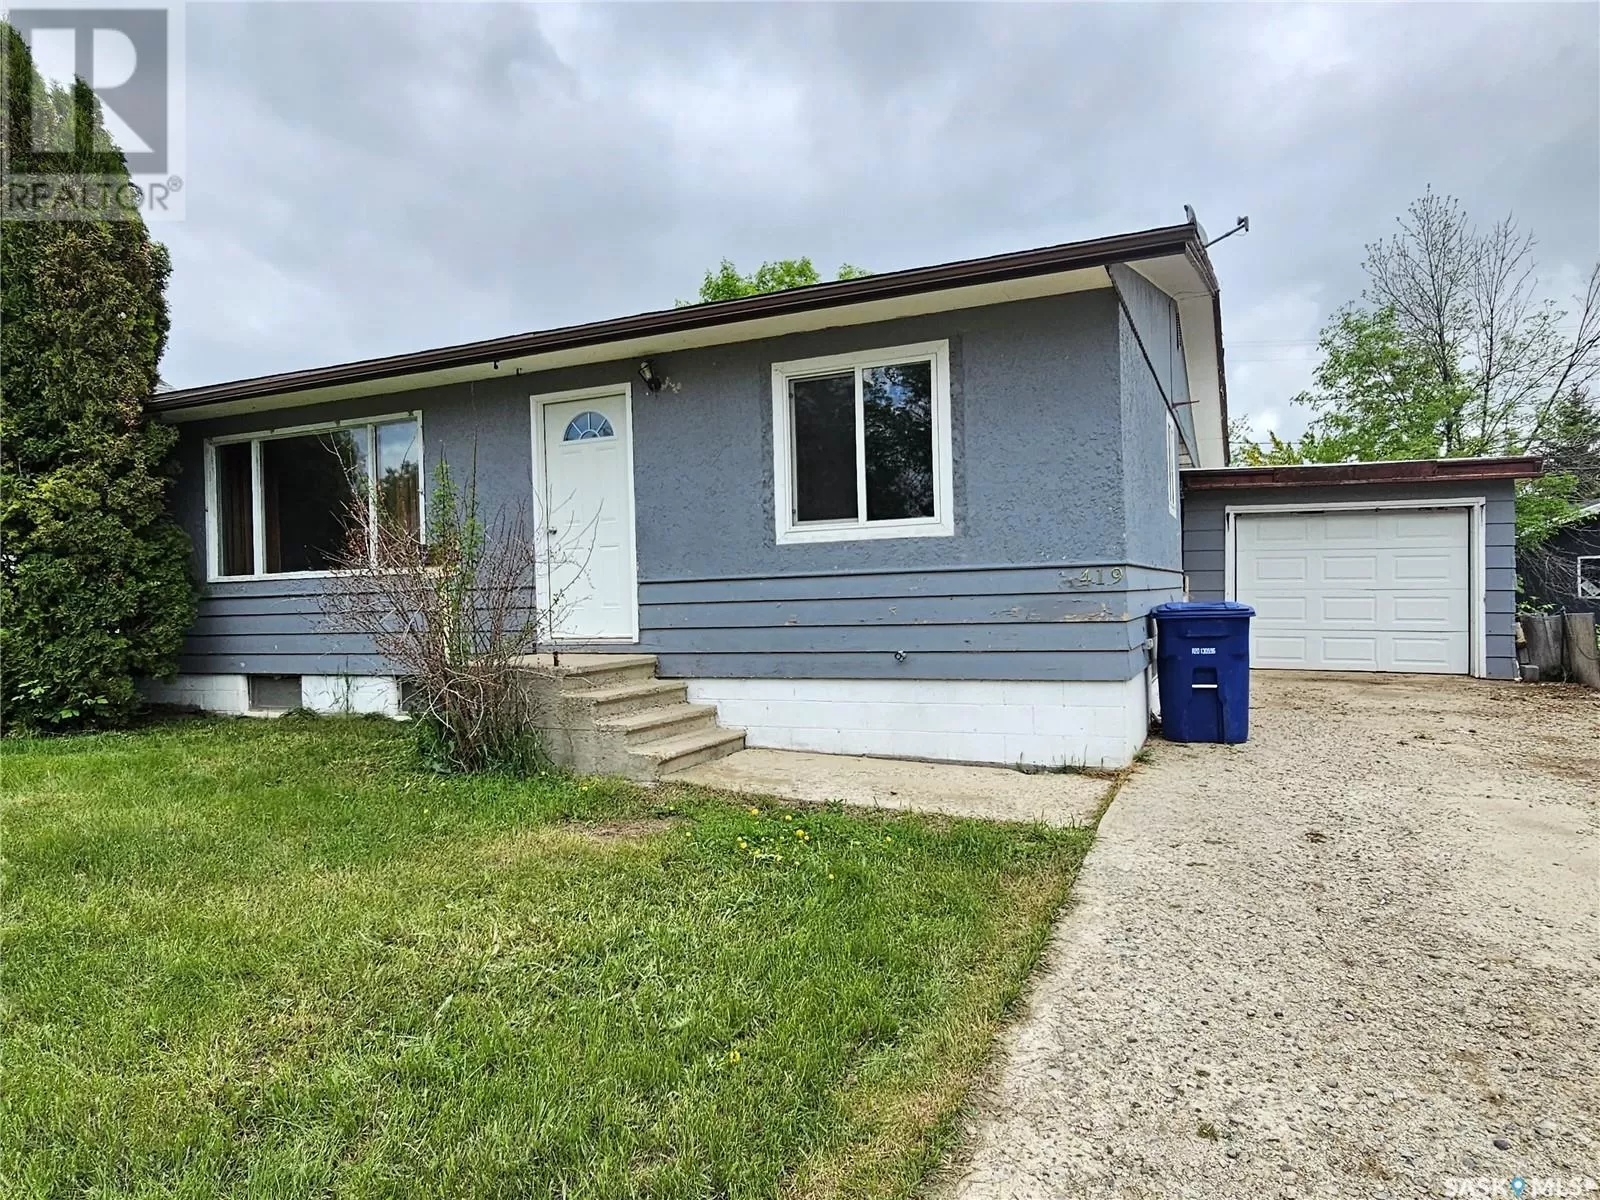 House for rent: 419 Annable Street, Herbert, Saskatchewan S0H 2A0